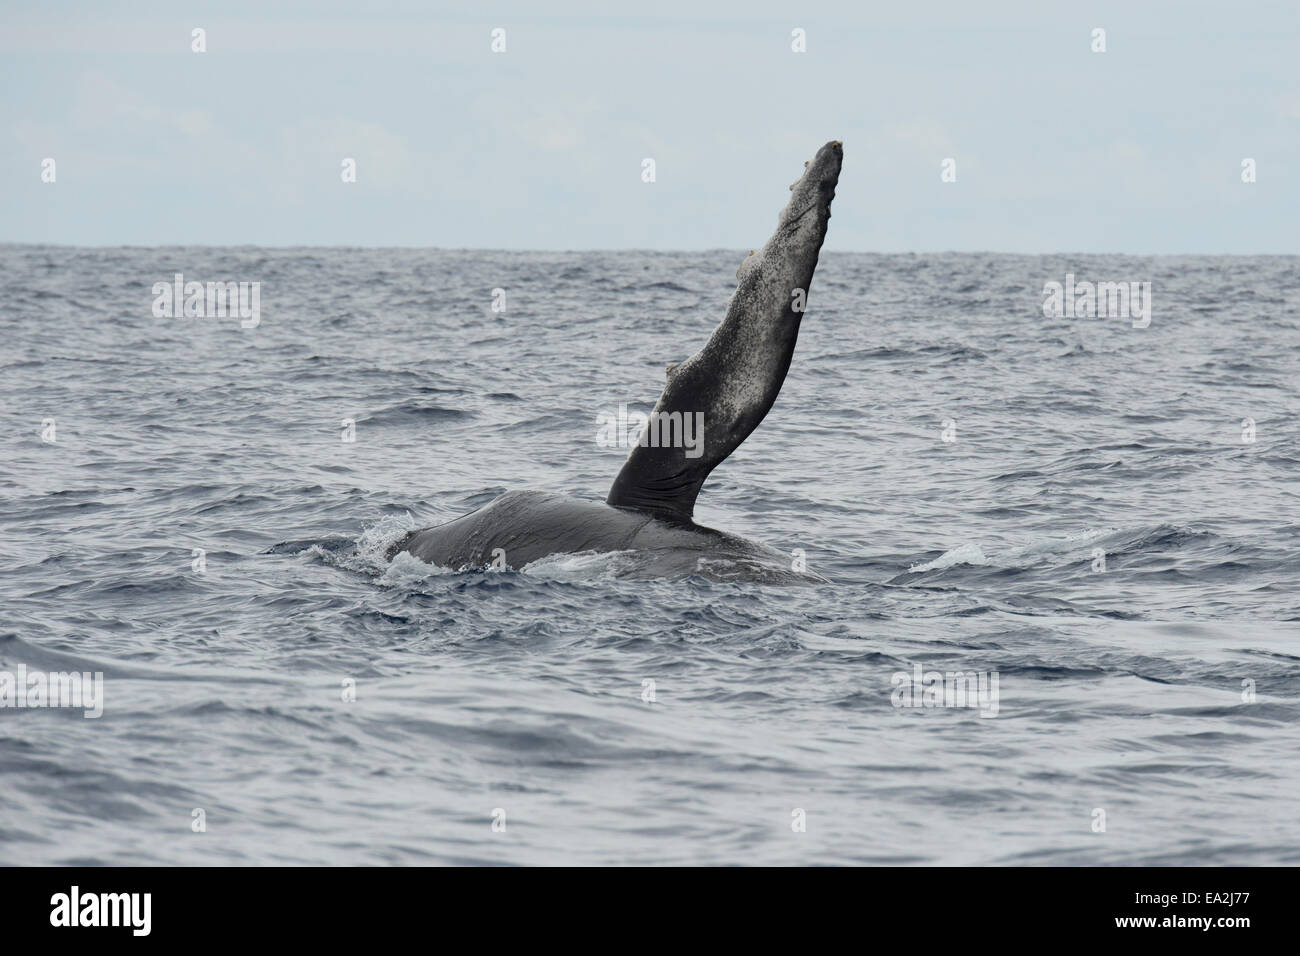 La ballena jorobada (Megaptera novaeangliae) aflora con impulsor izquierdo levantado. Azores, el Océano Atlántico. Foto de stock